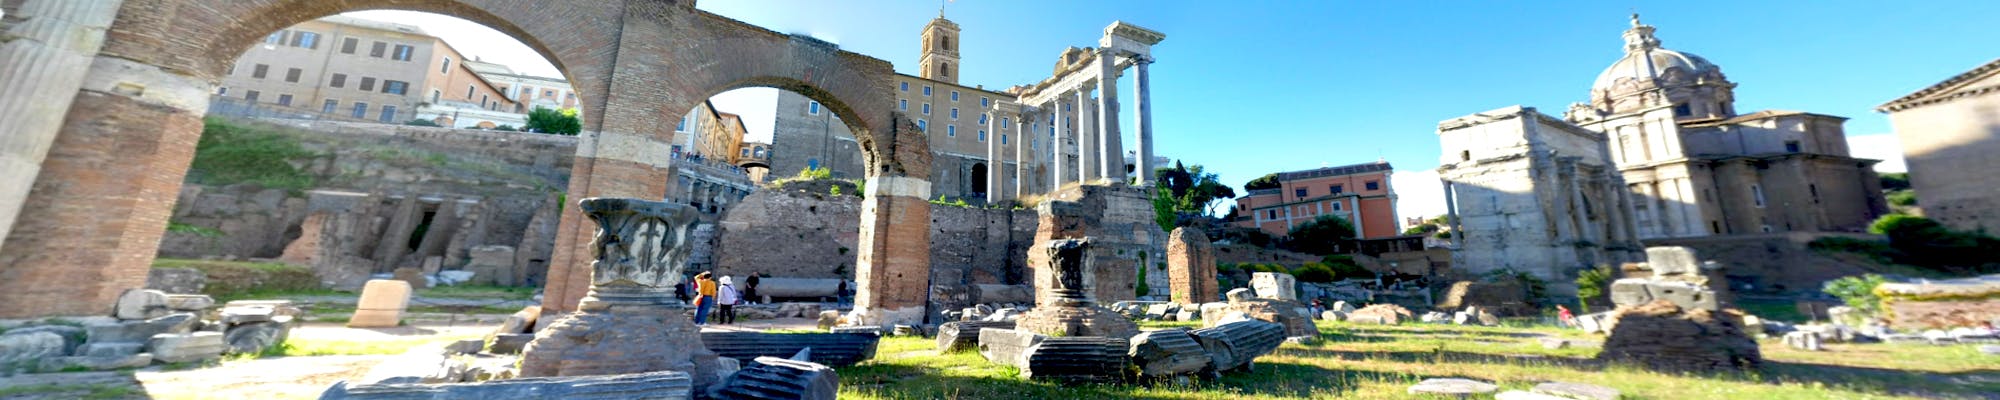 Virtuelle Tour durch das Forum Romanum von zu Hause aus